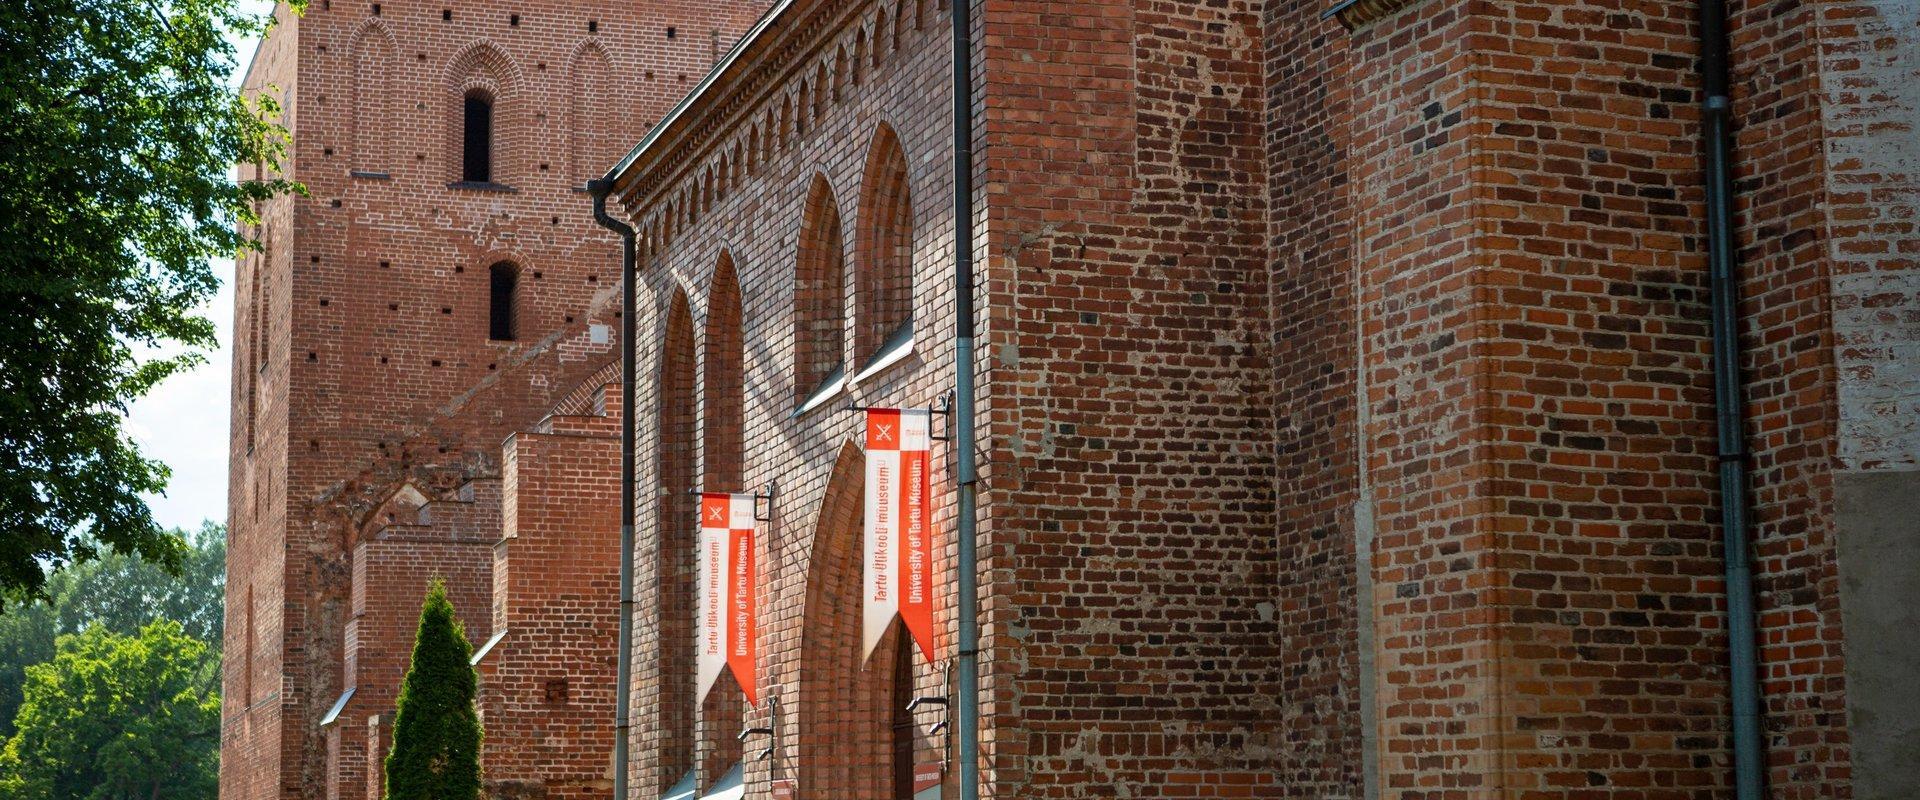 Domkirche zu Tartu, Eingang ins Museum der Universität Tartu